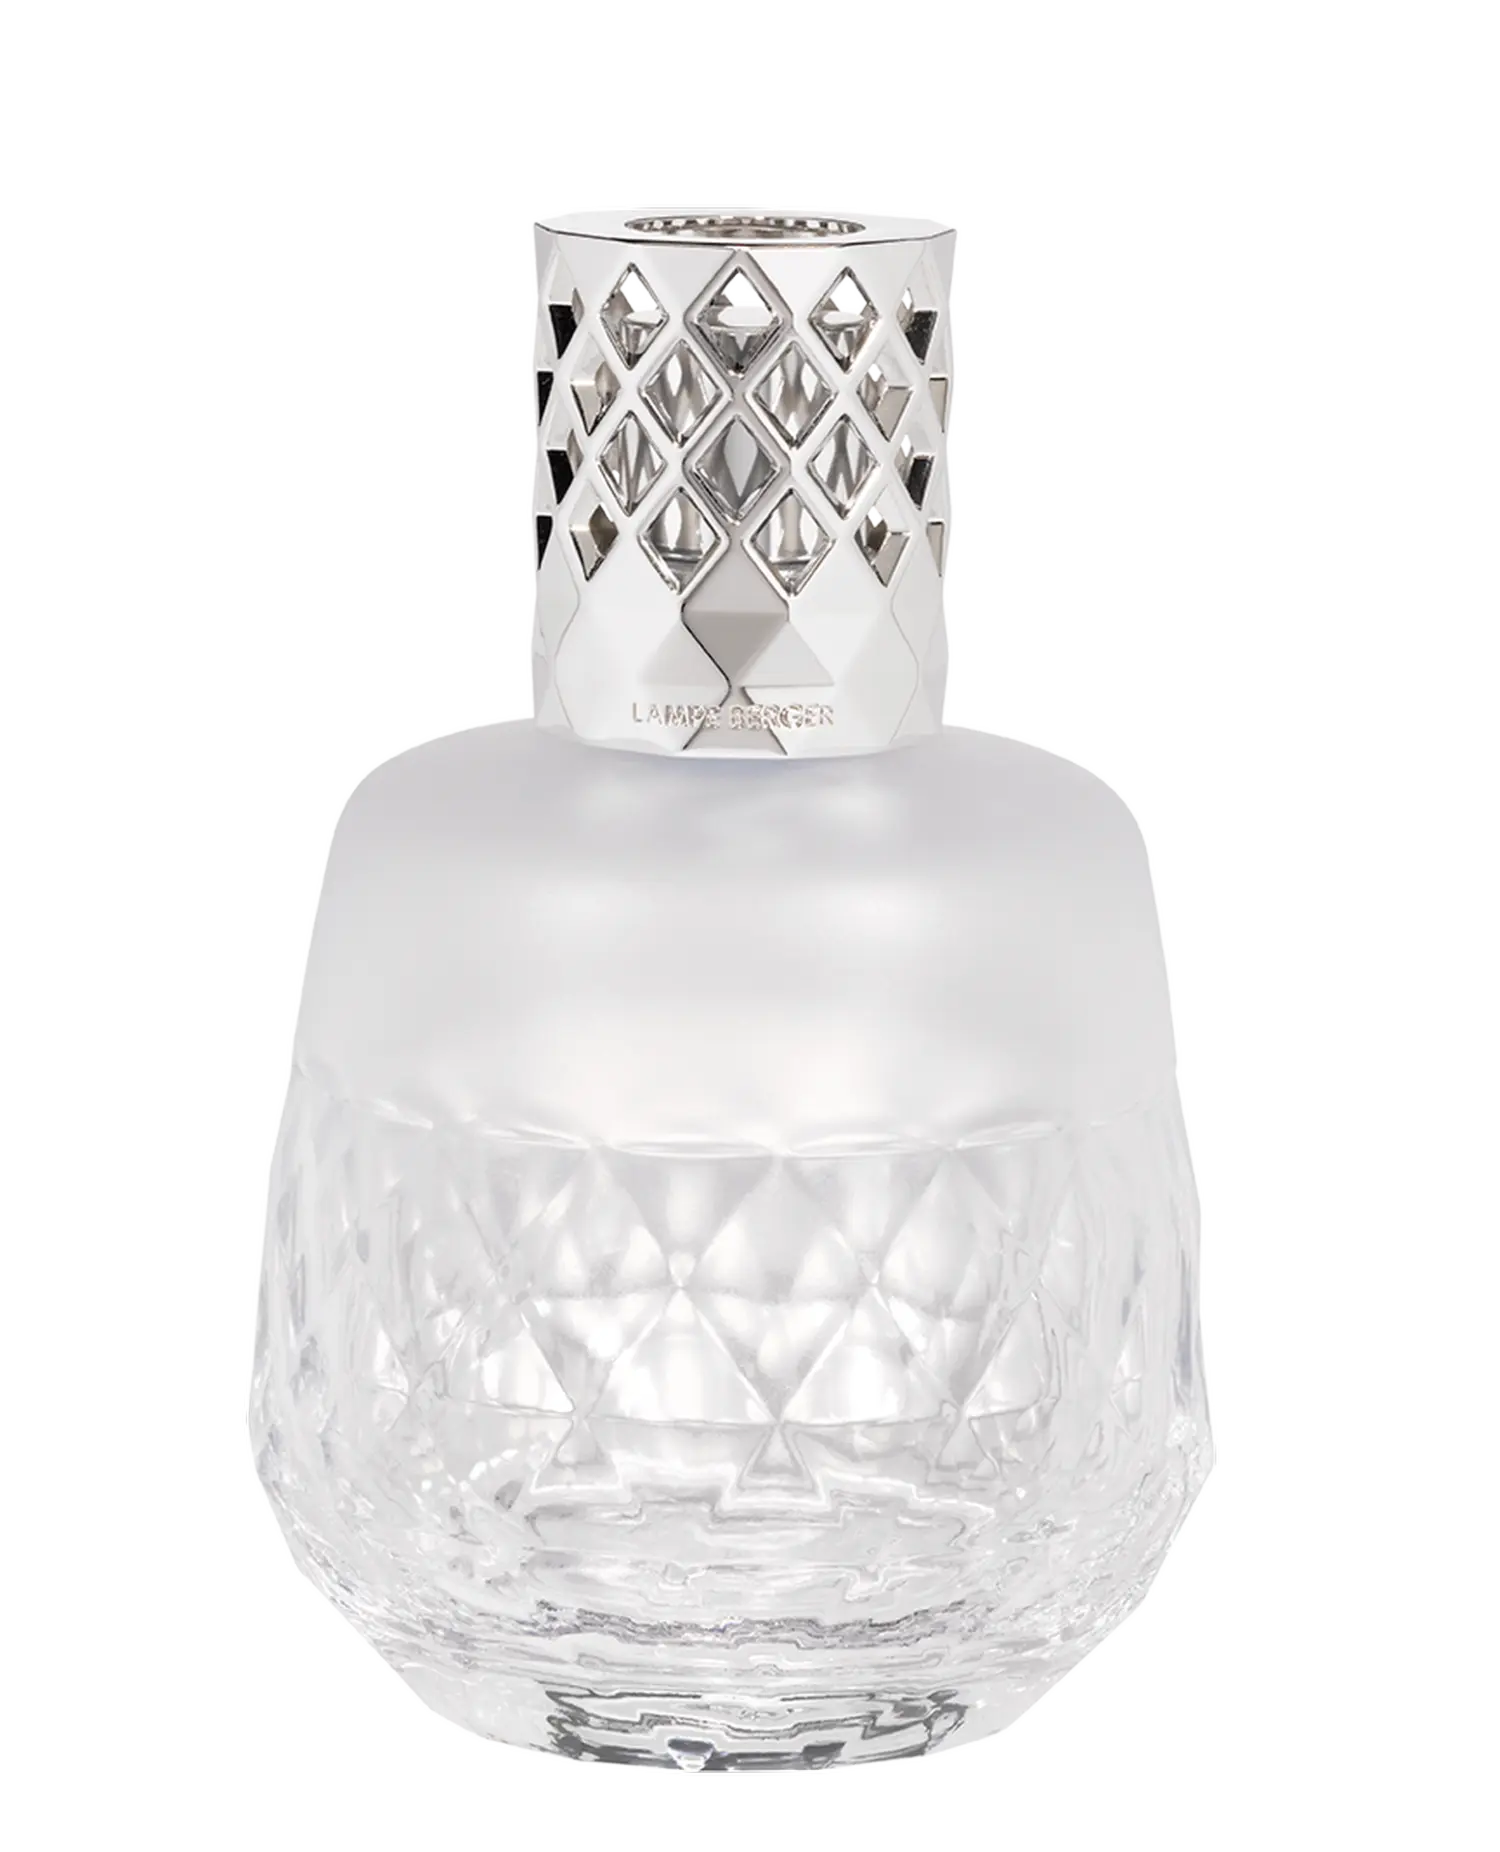 MAISON BERGER PARIS - Lampe Berger Clarity – Weiß gefrostet - Duftlampe